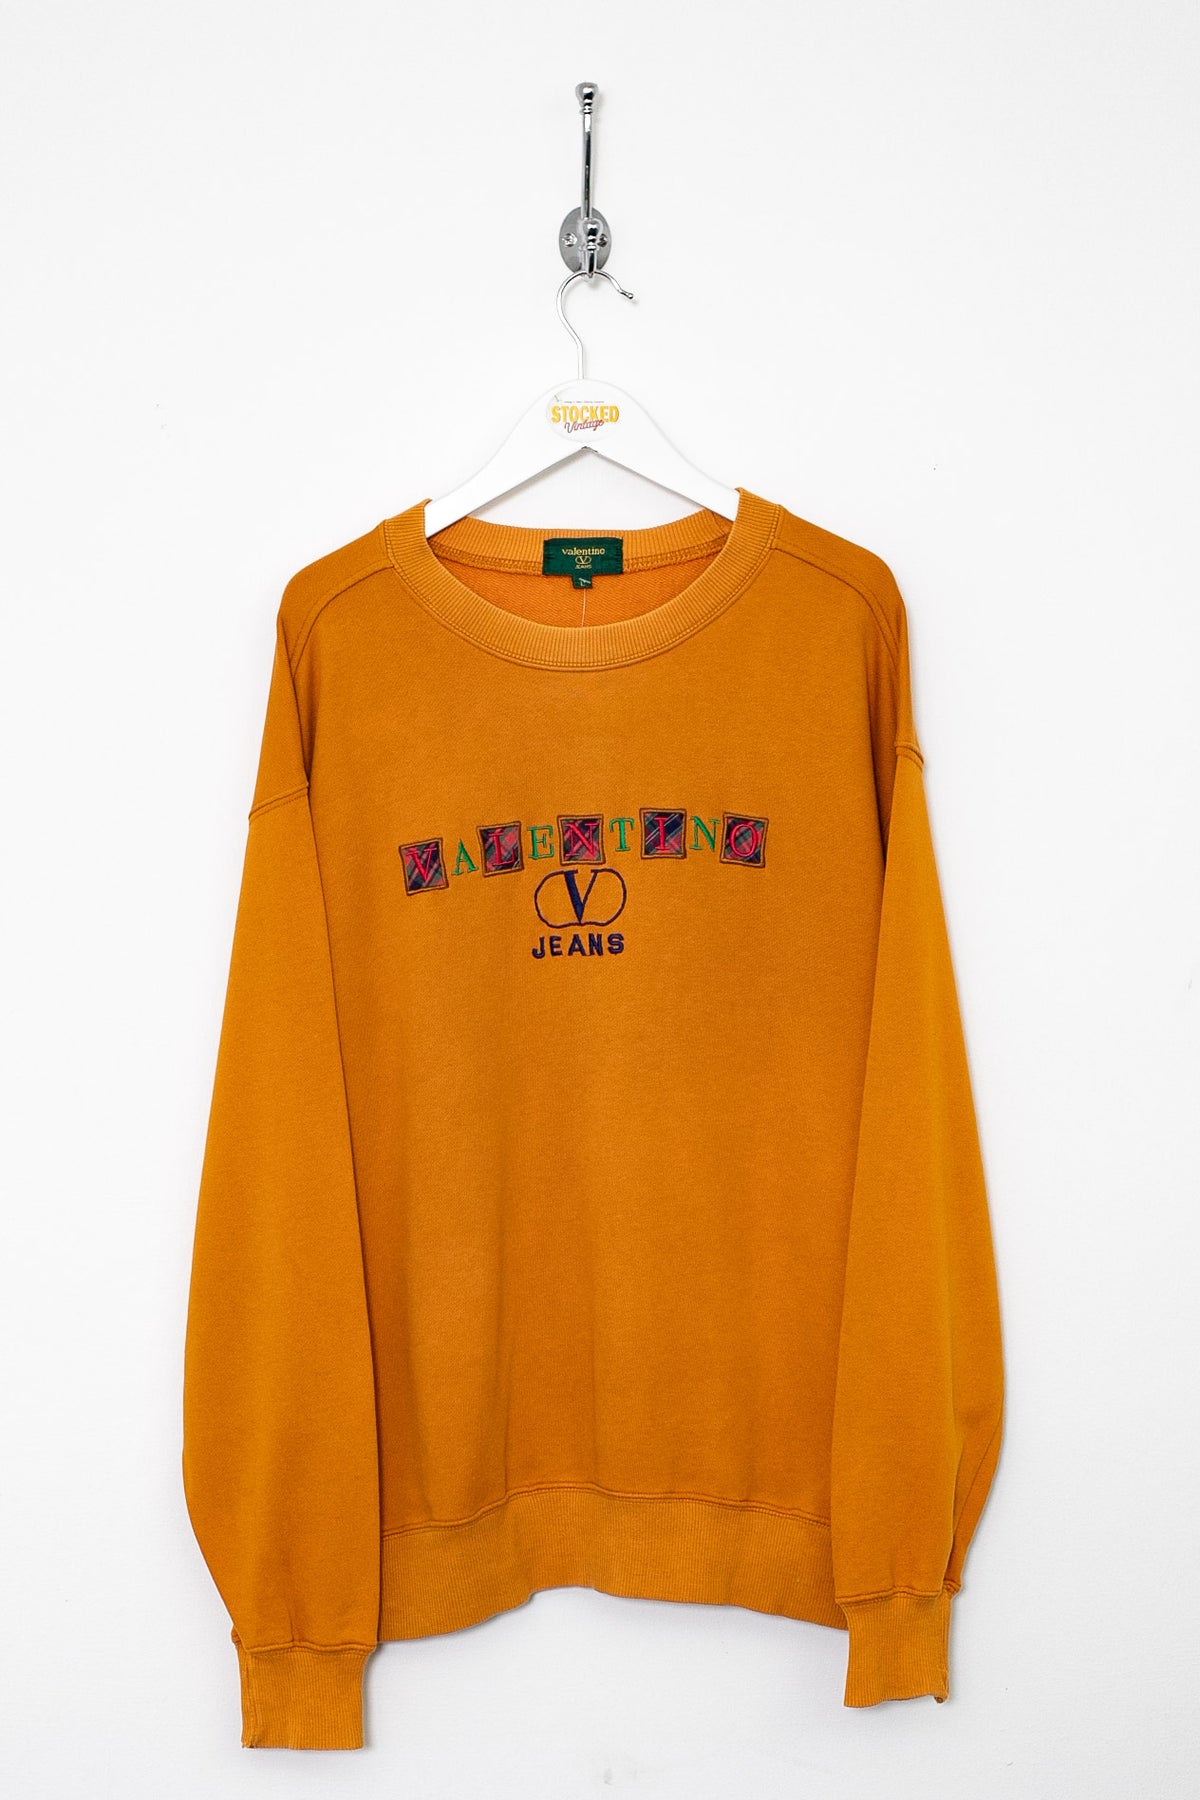 90s Valentino Sweatshirt (M)